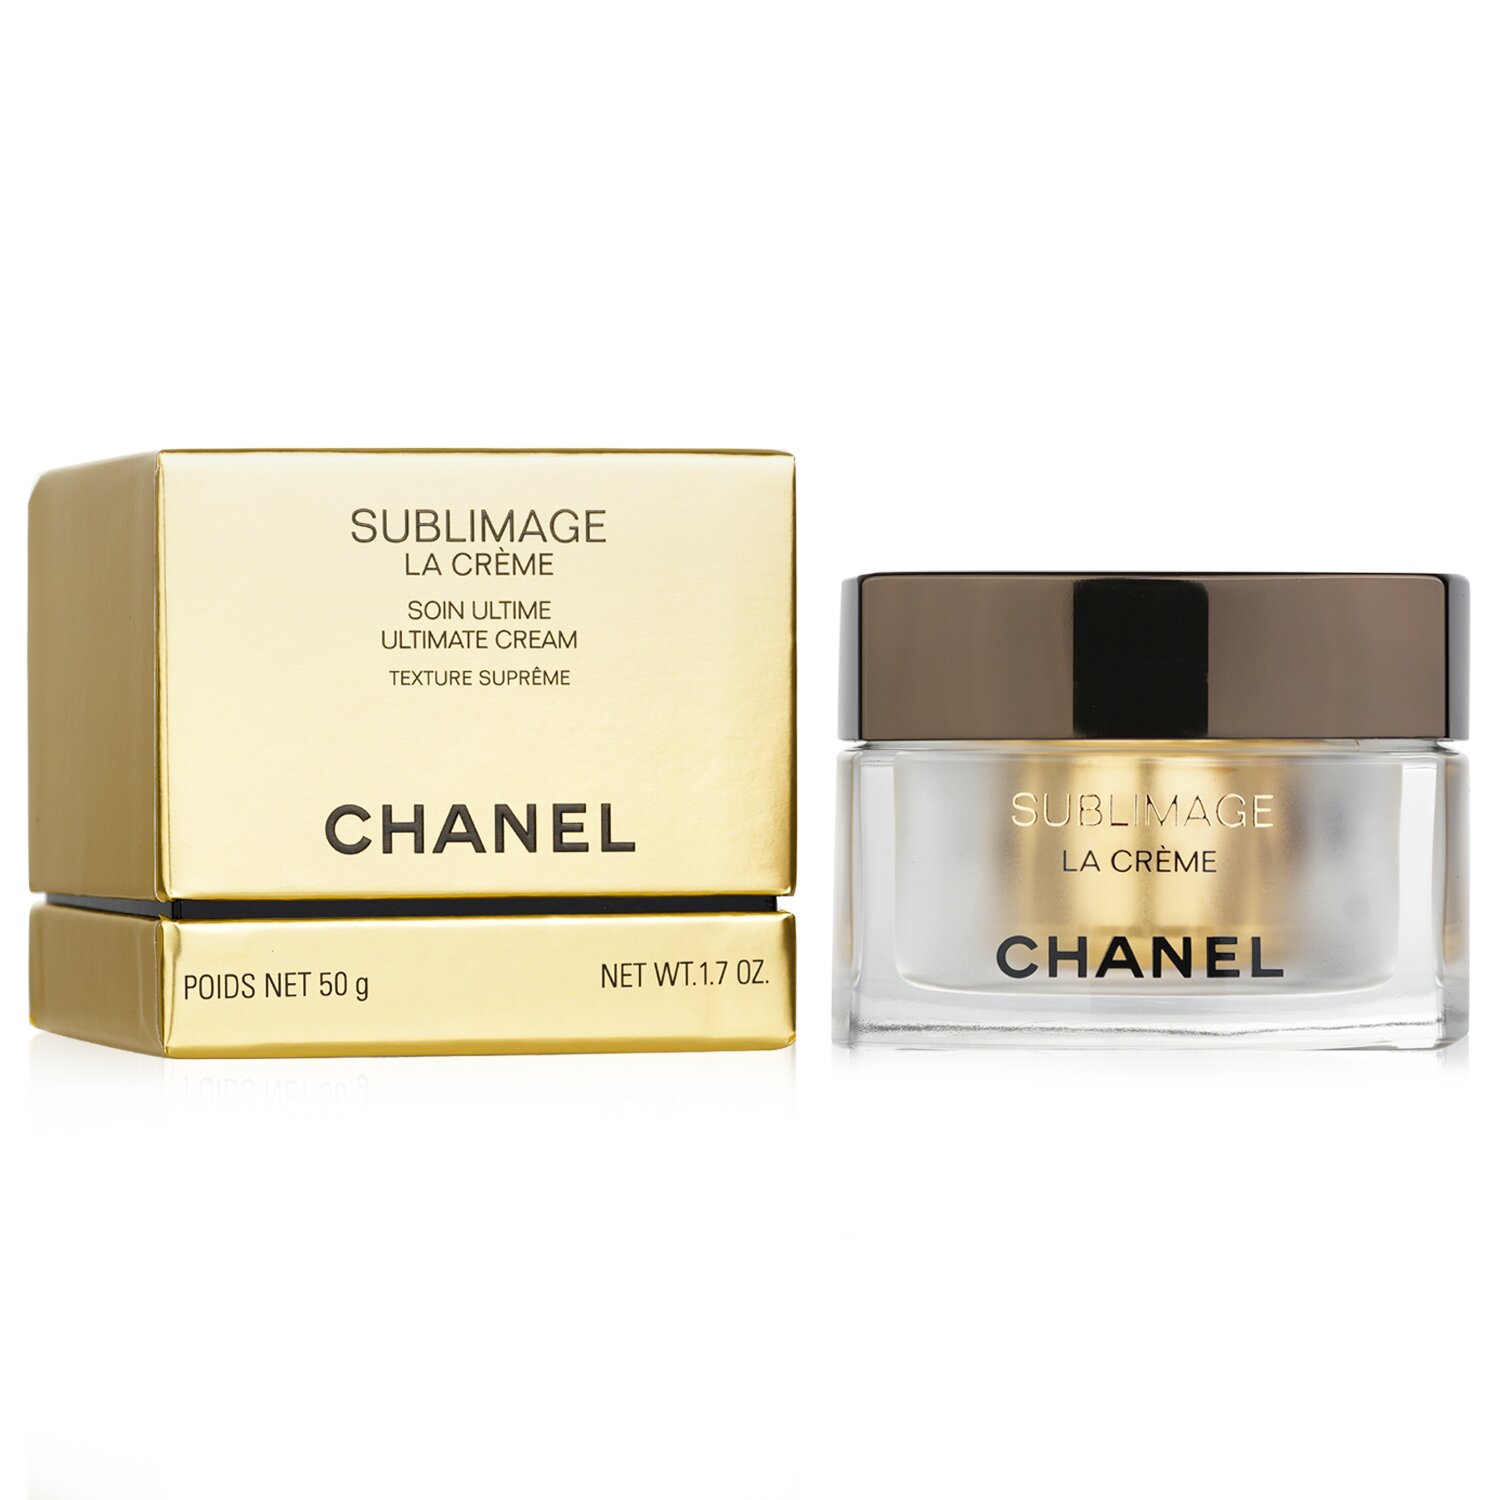 Chanel Sublimage La Crème Ultimate Cream Texture Supreme 50g/1.7oz